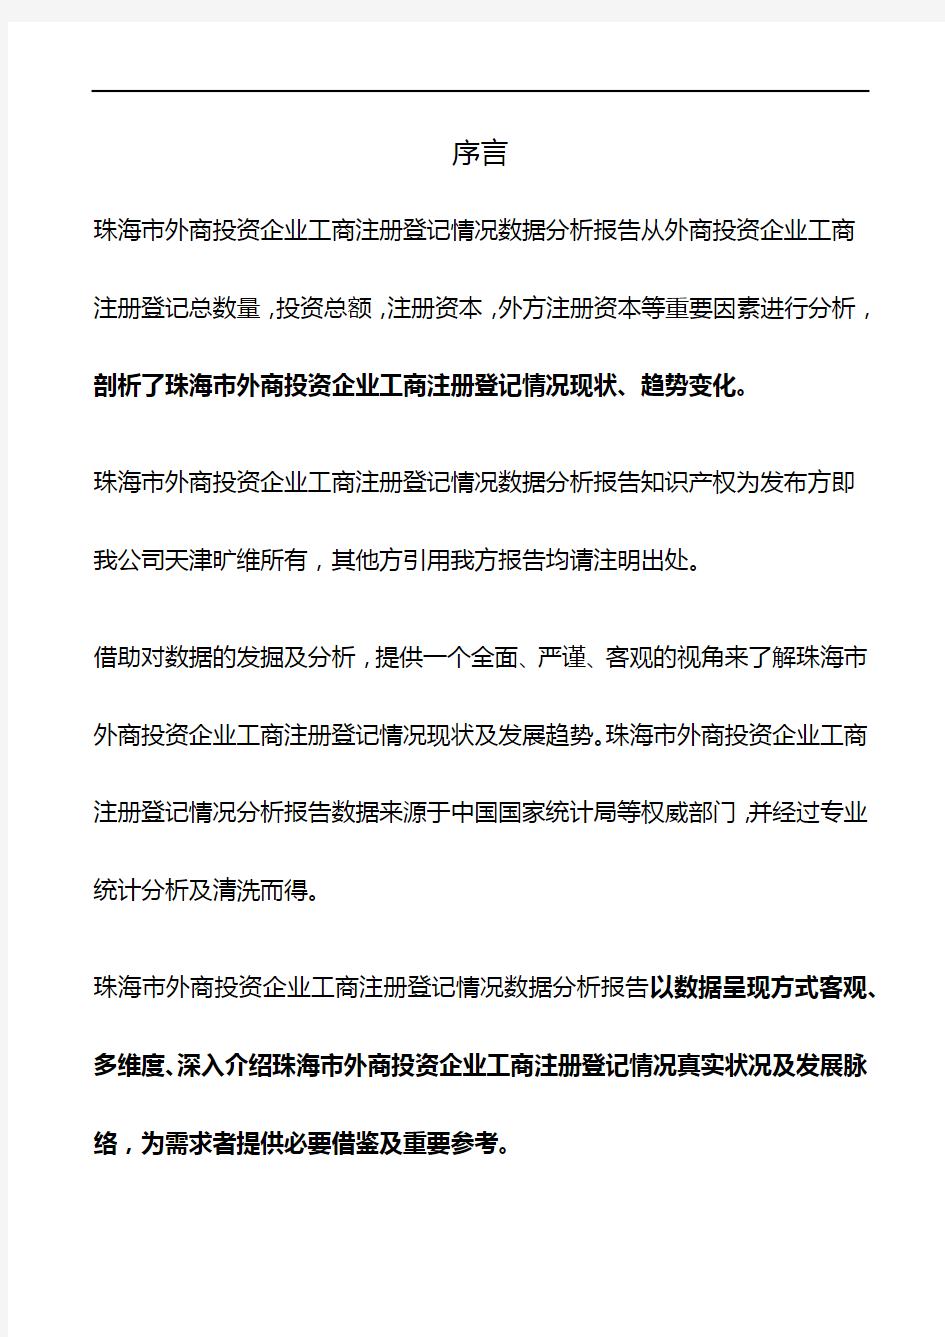 广东省珠海市外商投资企业工商注册登记情况数据分析报告2019版